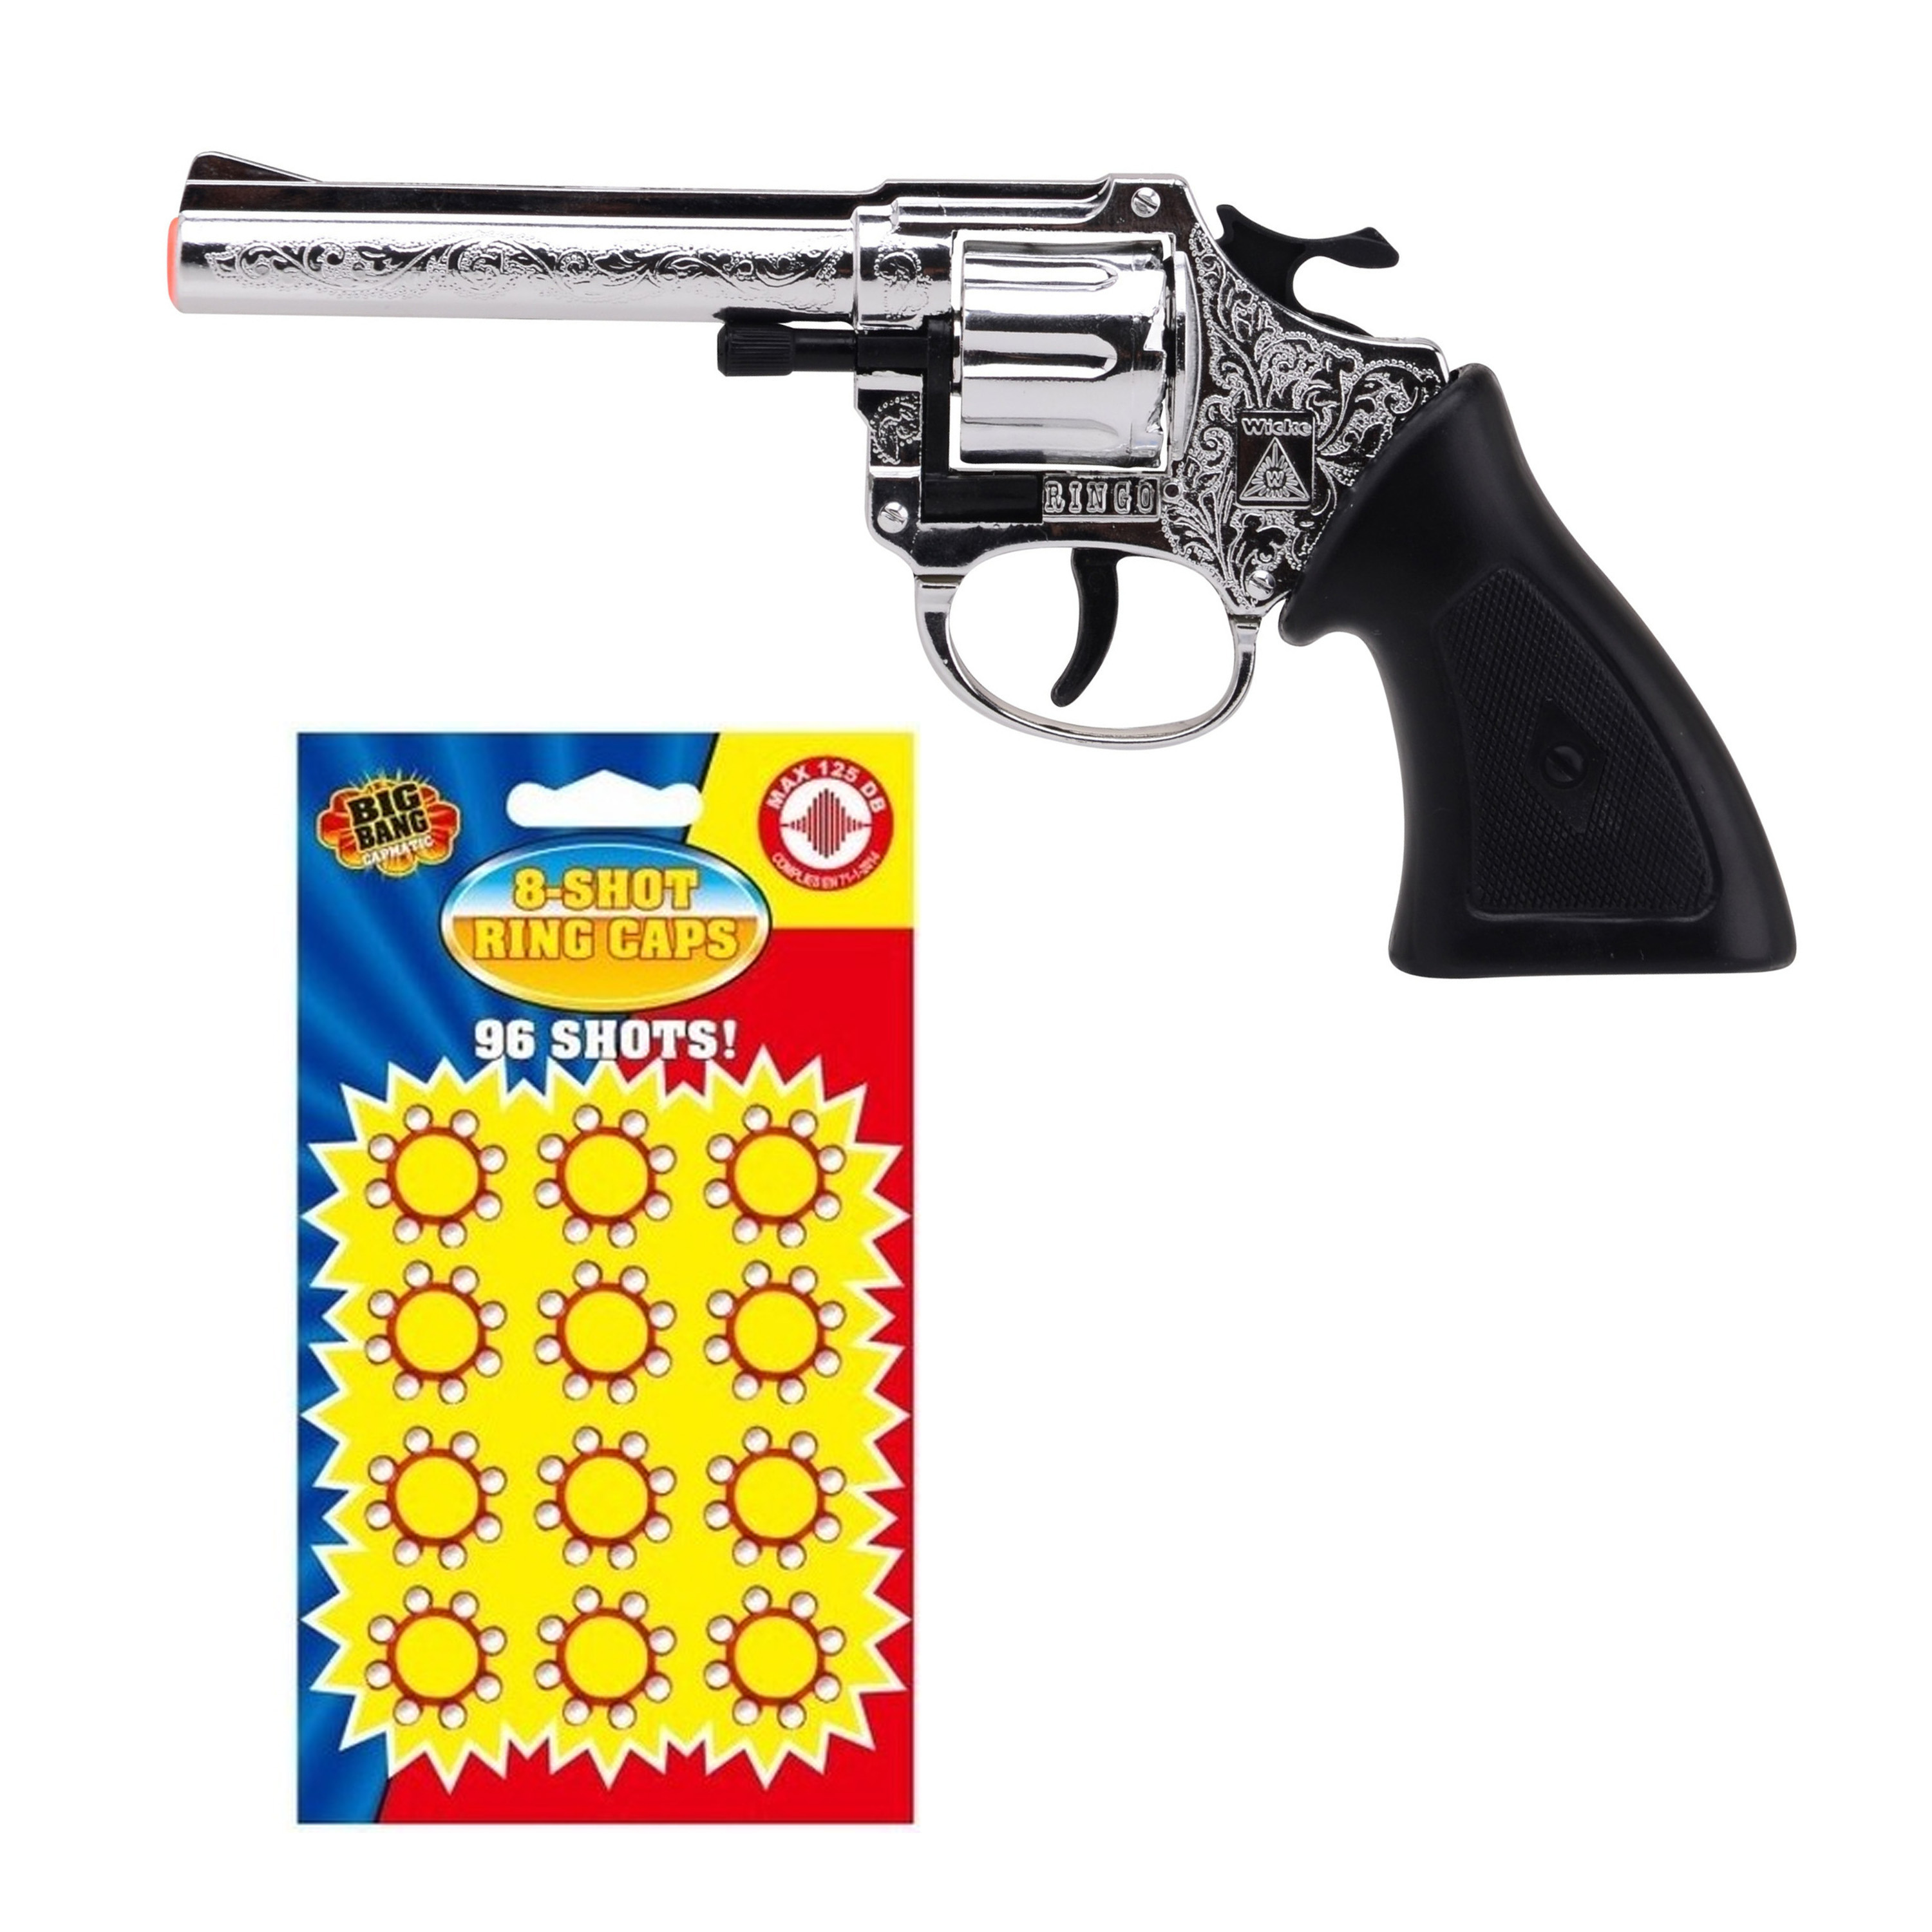 Cowboy verkleed speelgoed revolver-pistool kunststof 8 schots met plaffertjes